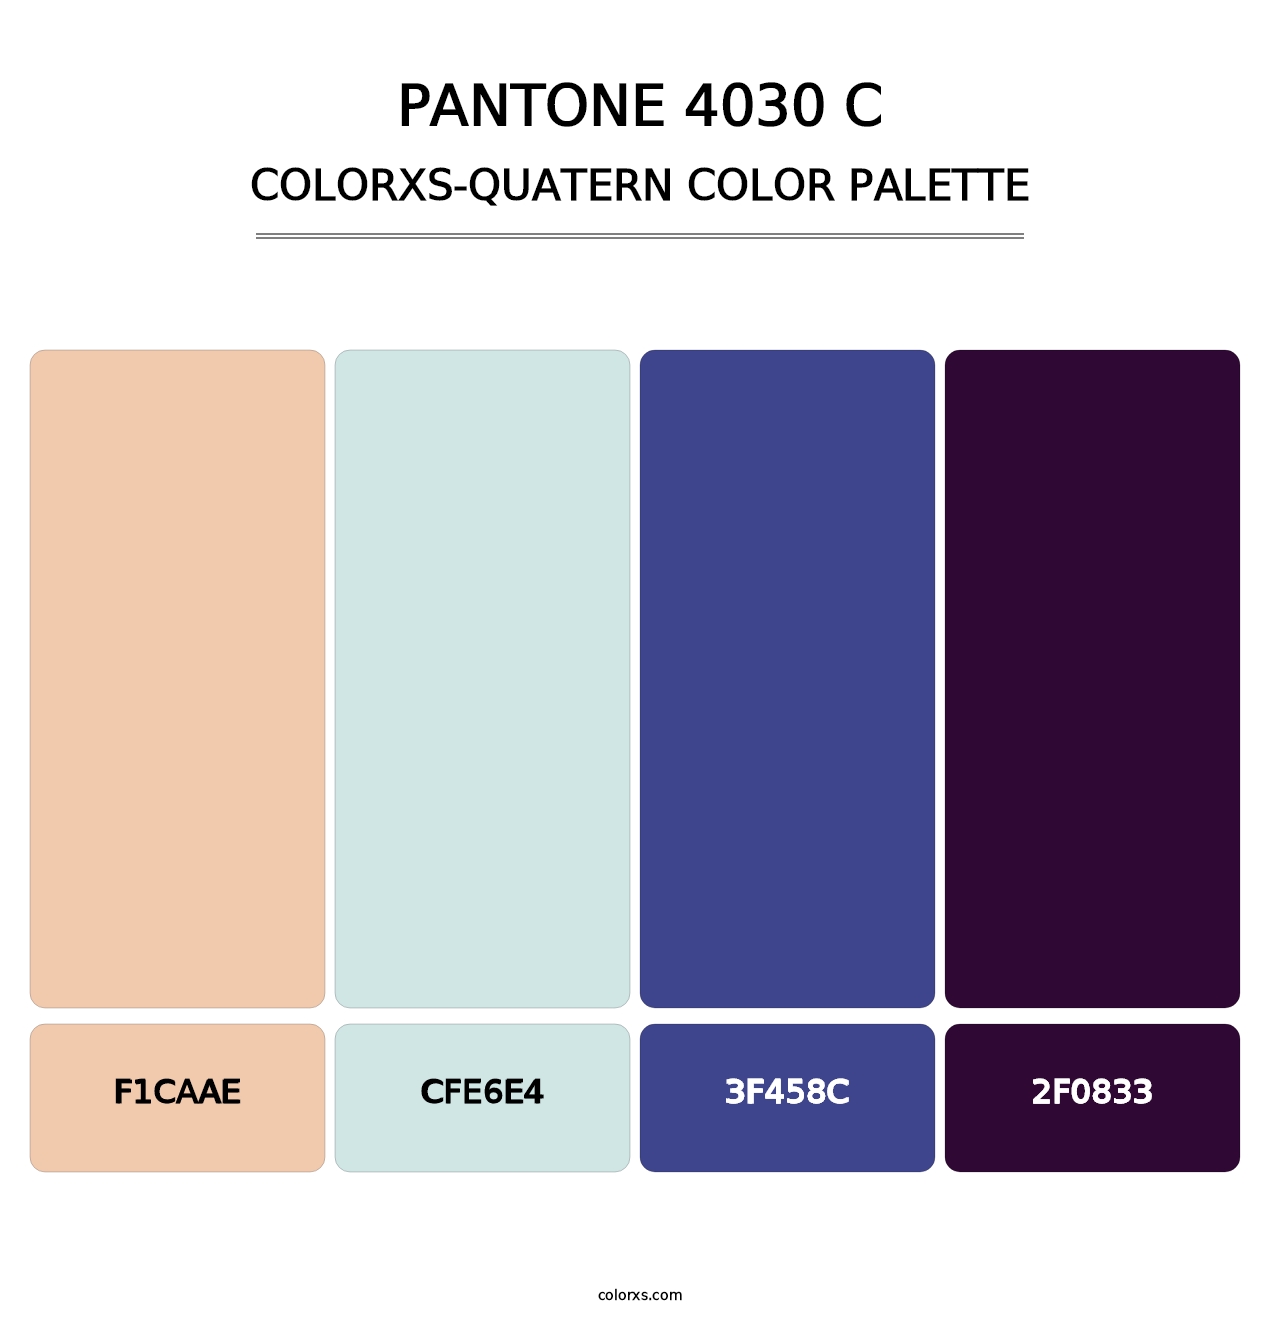 PANTONE 4030 C - Colorxs Quatern Palette